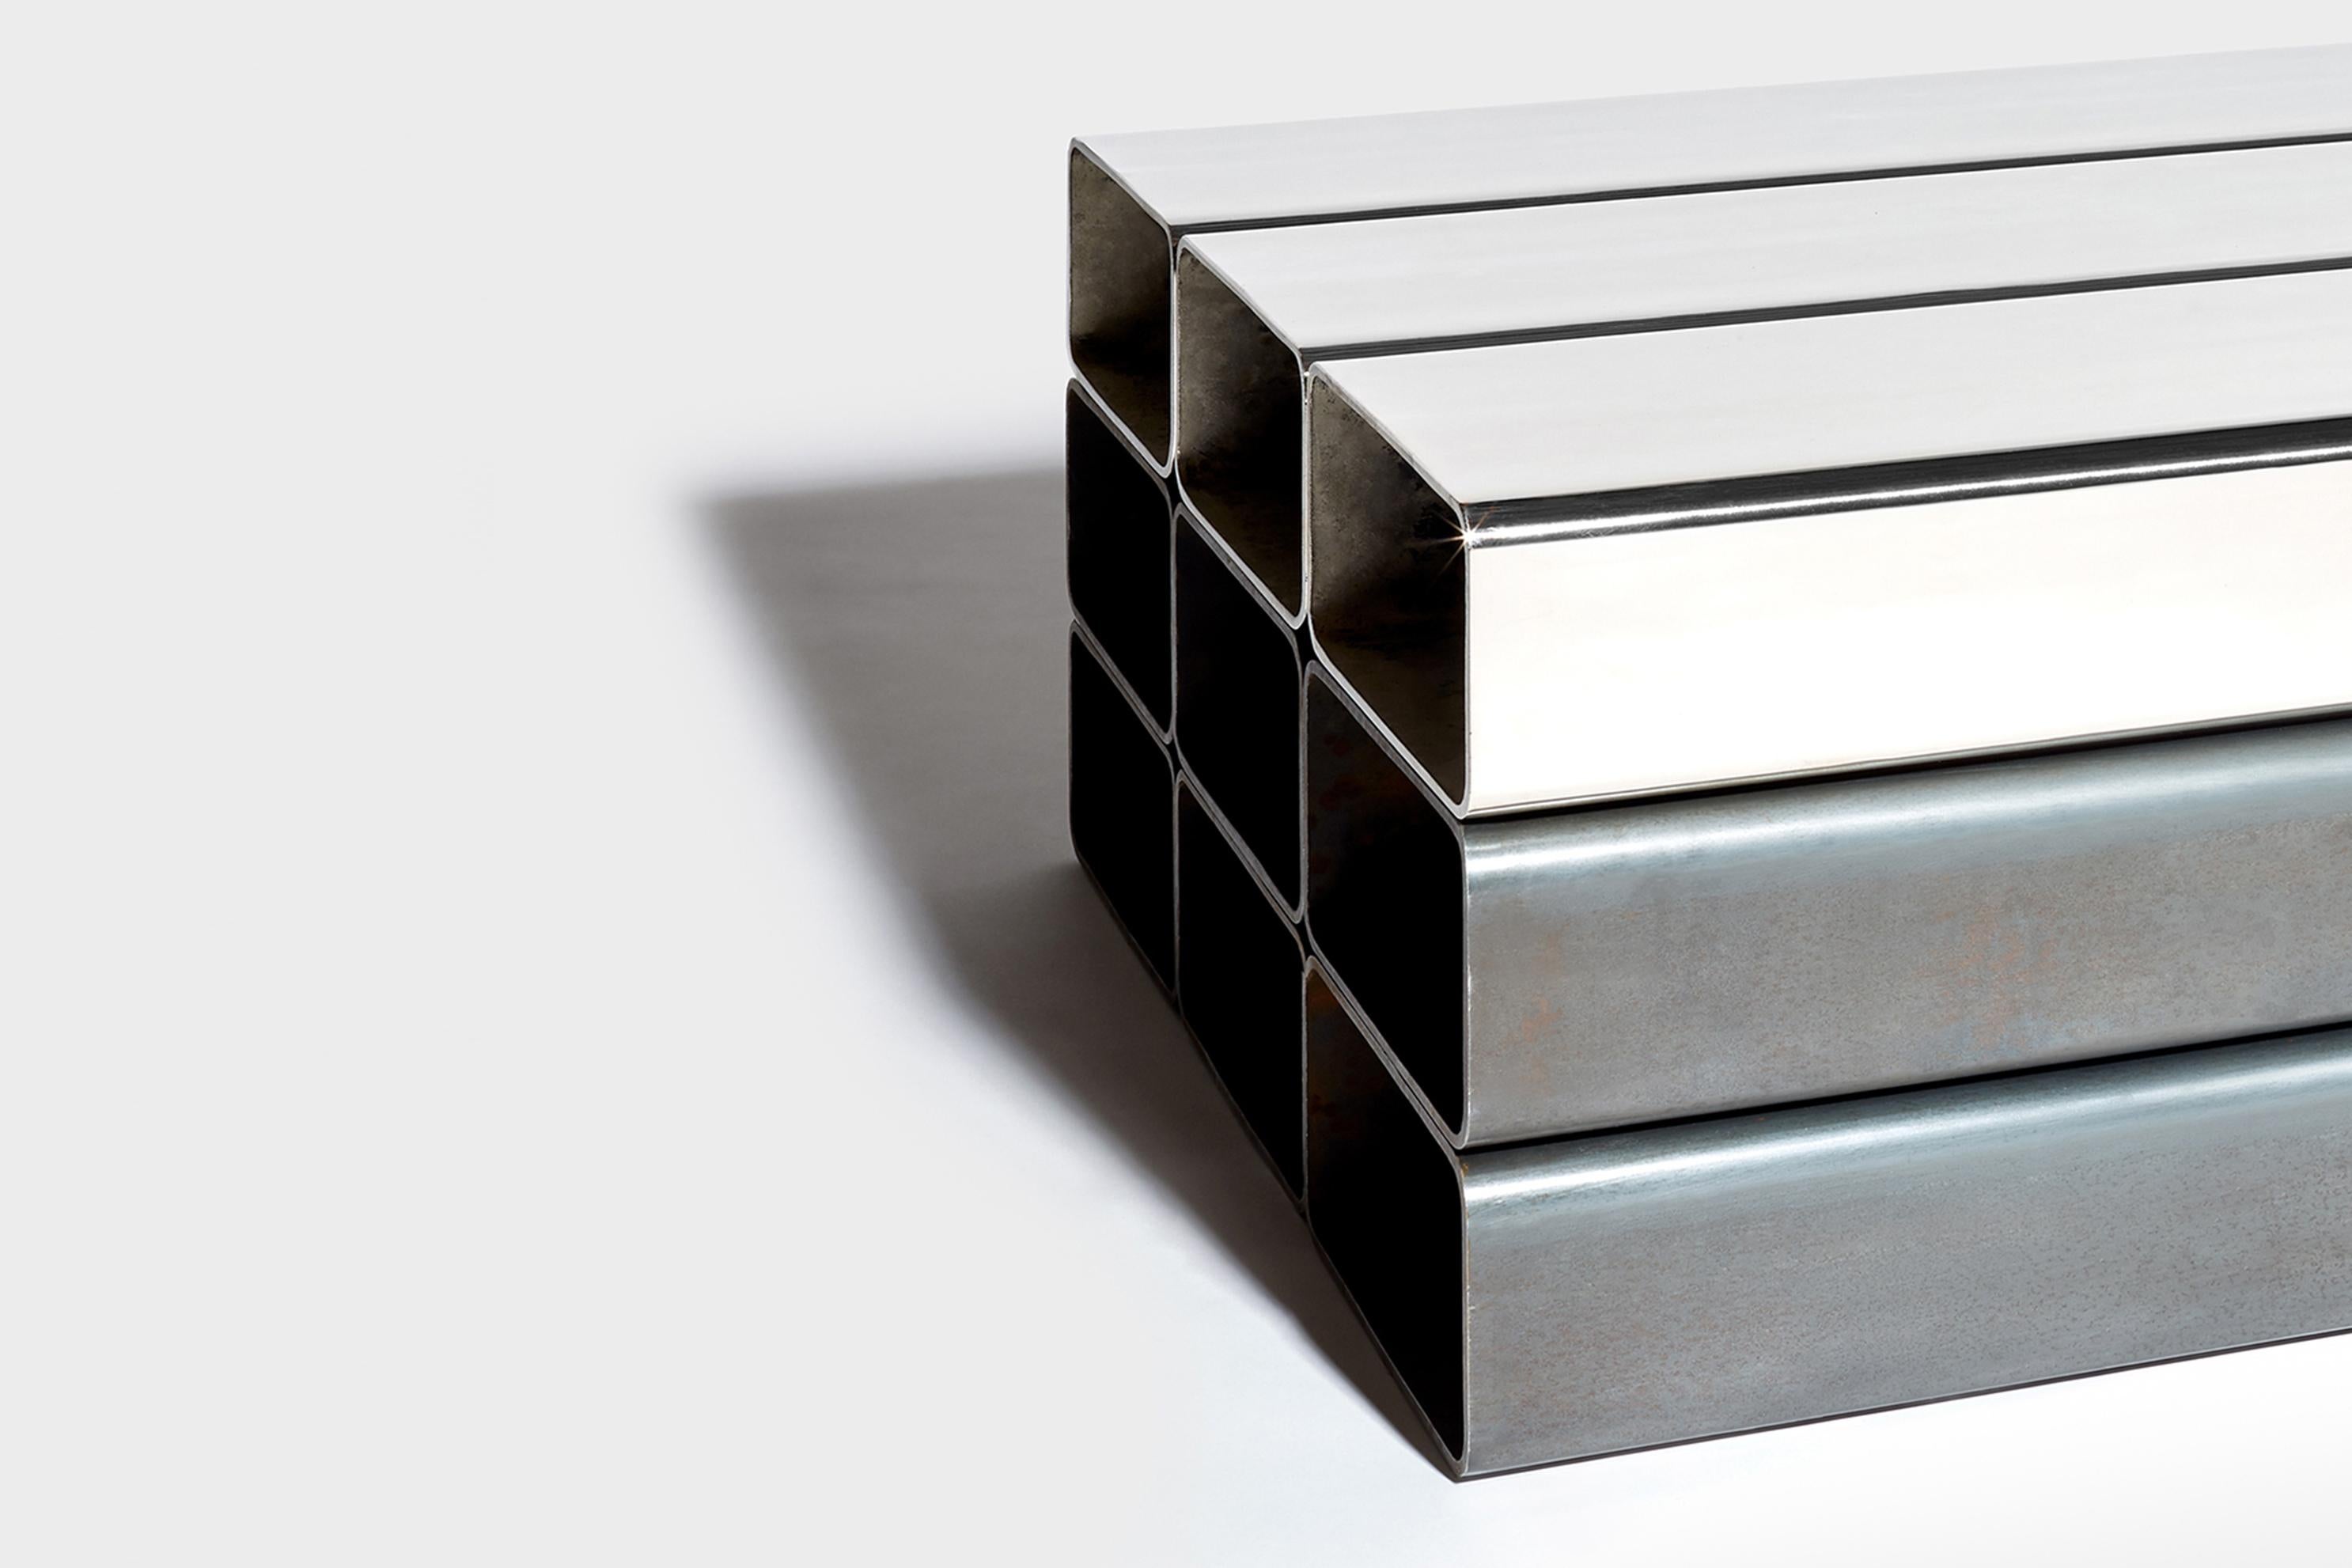 Construite à partir de neuf tubes d'acier droits, la table Pallet incarne le minimalisme. Le design conserve la matérialité inhérente à l'acier, laissant transparaître son caractère brut. Trois des tubes sont plaqués avec une finition en nickel